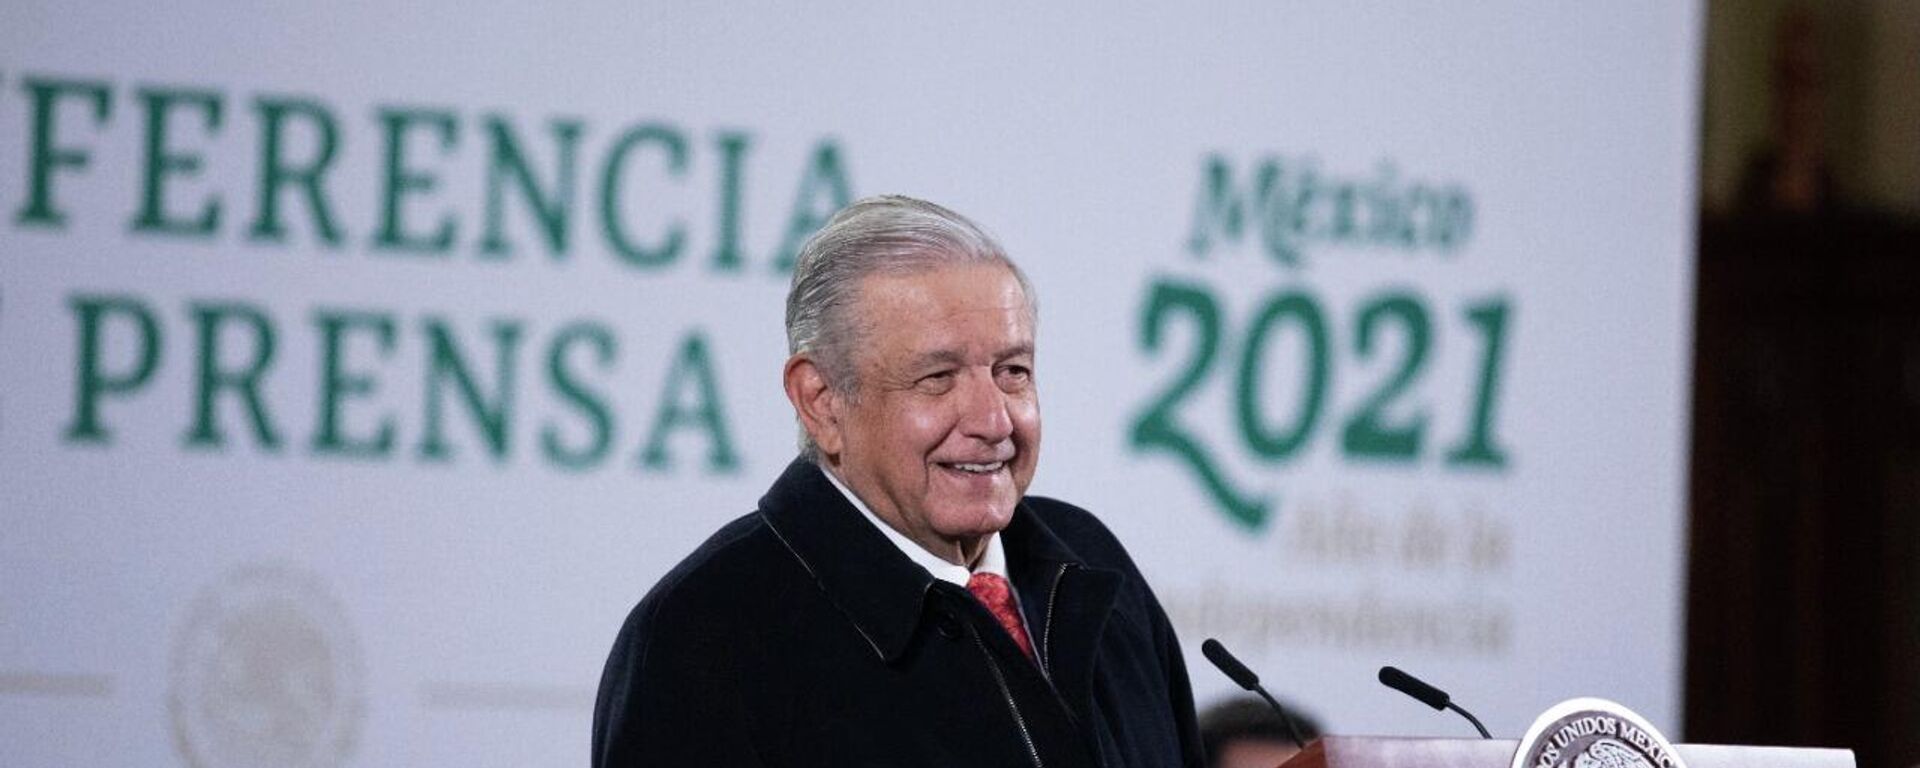 Andrés Manuel López Obrador, presidente de México - Sputnik Mundo, 1920, 08.11.2021